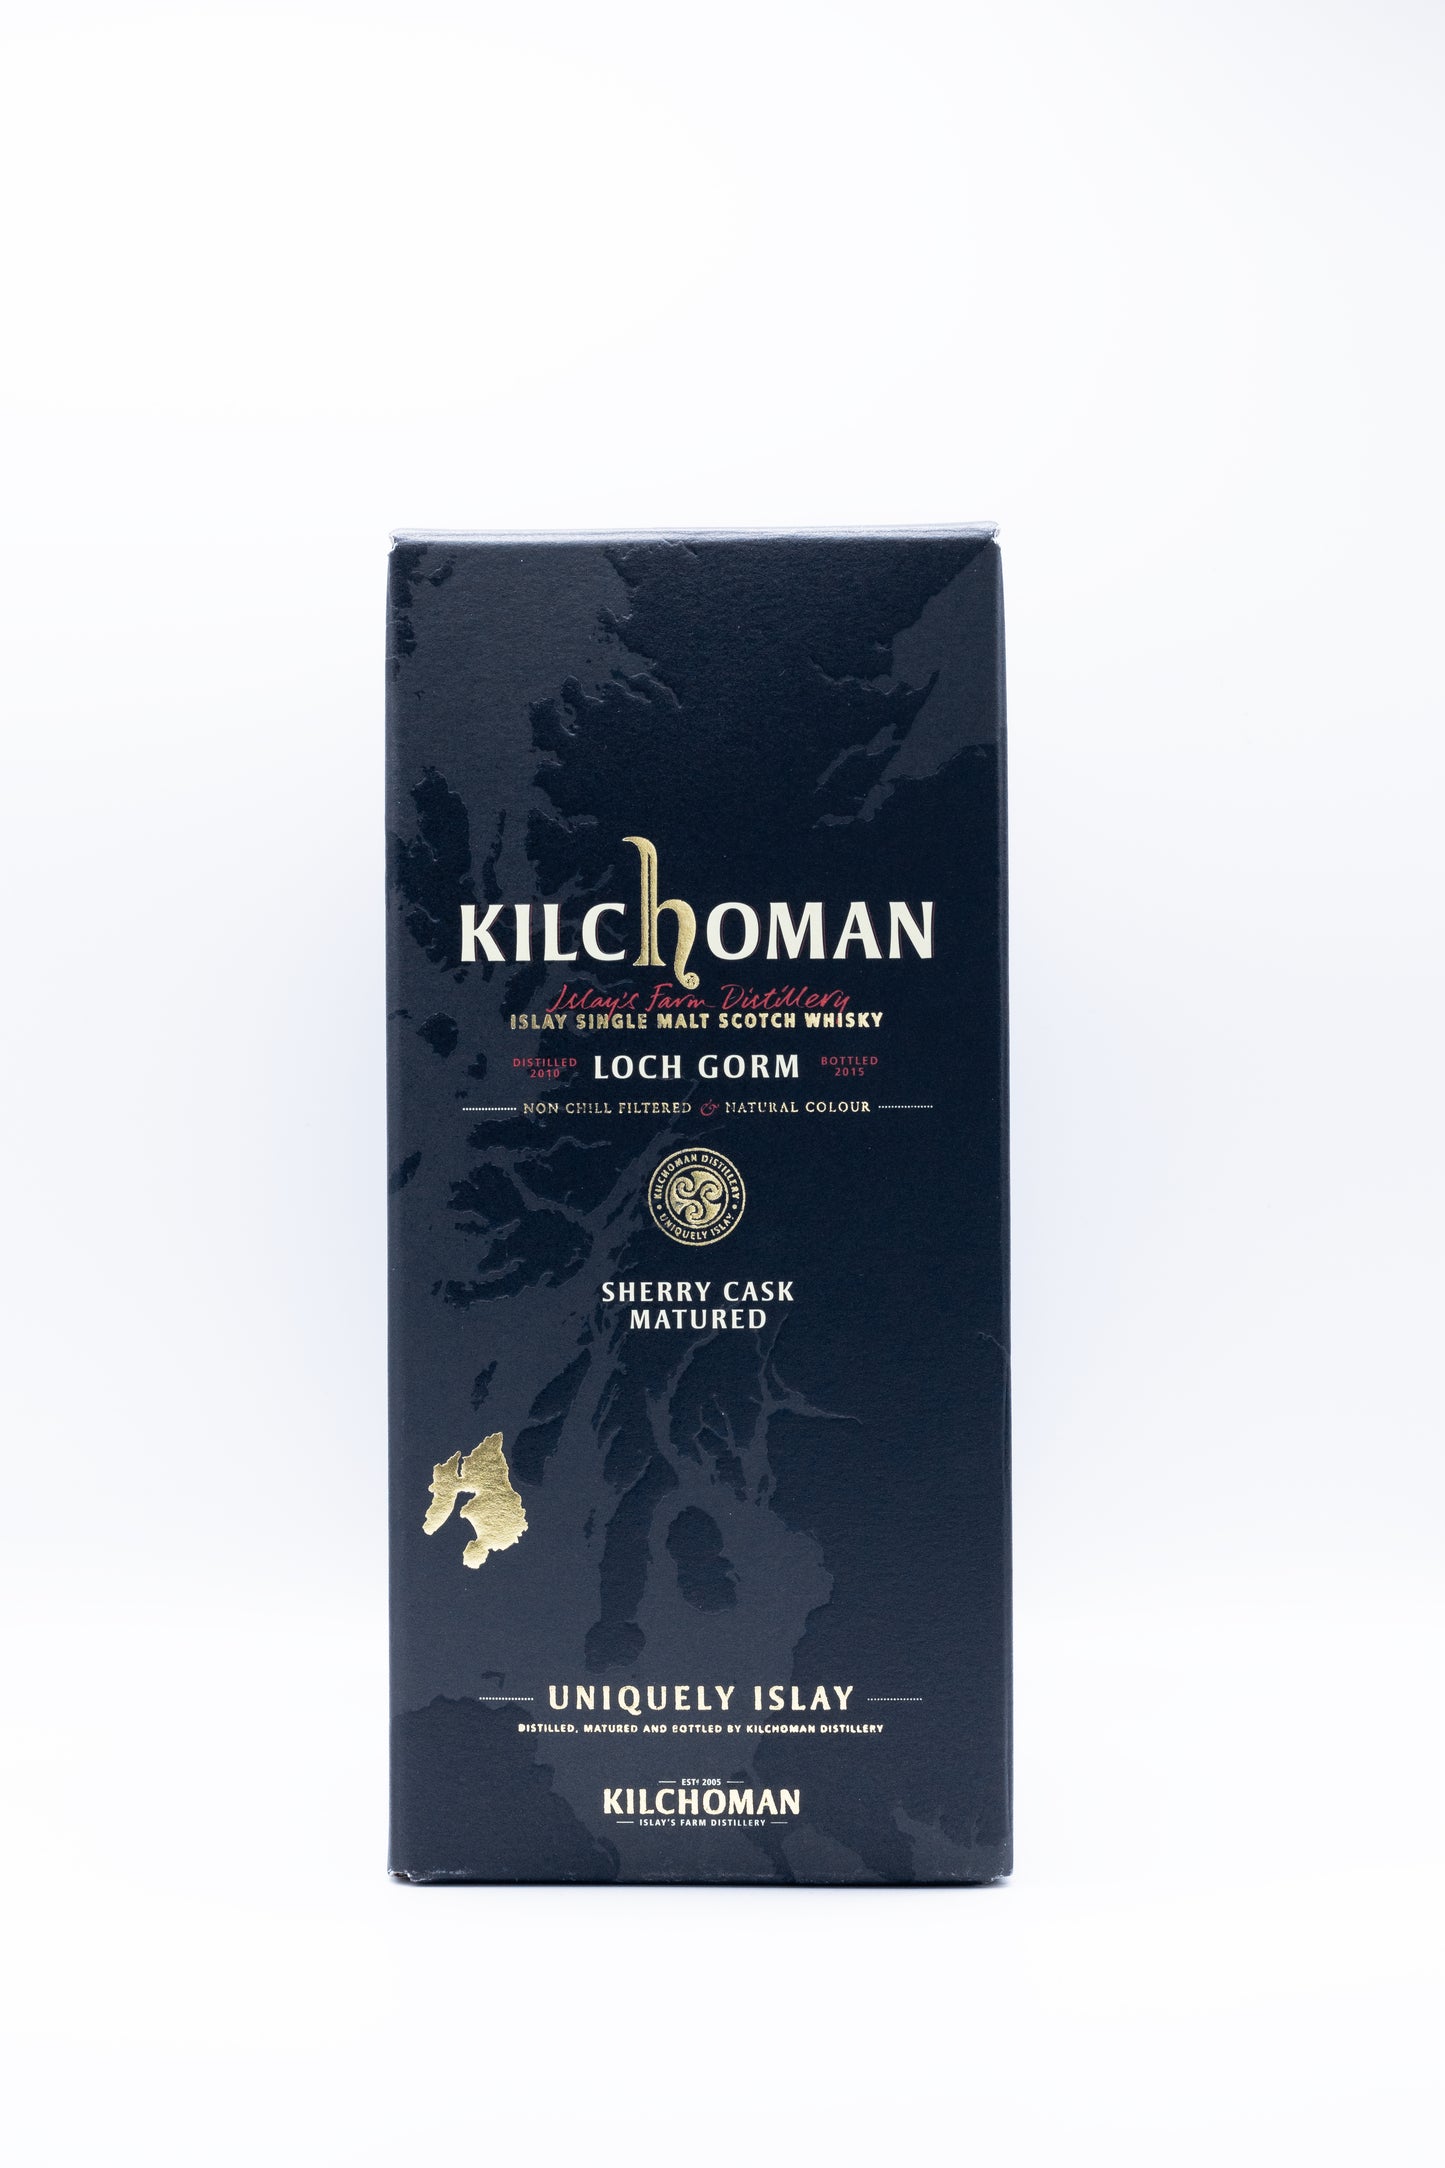 Kilchoman Loch Gorm 2015 Sherry Cask Matured